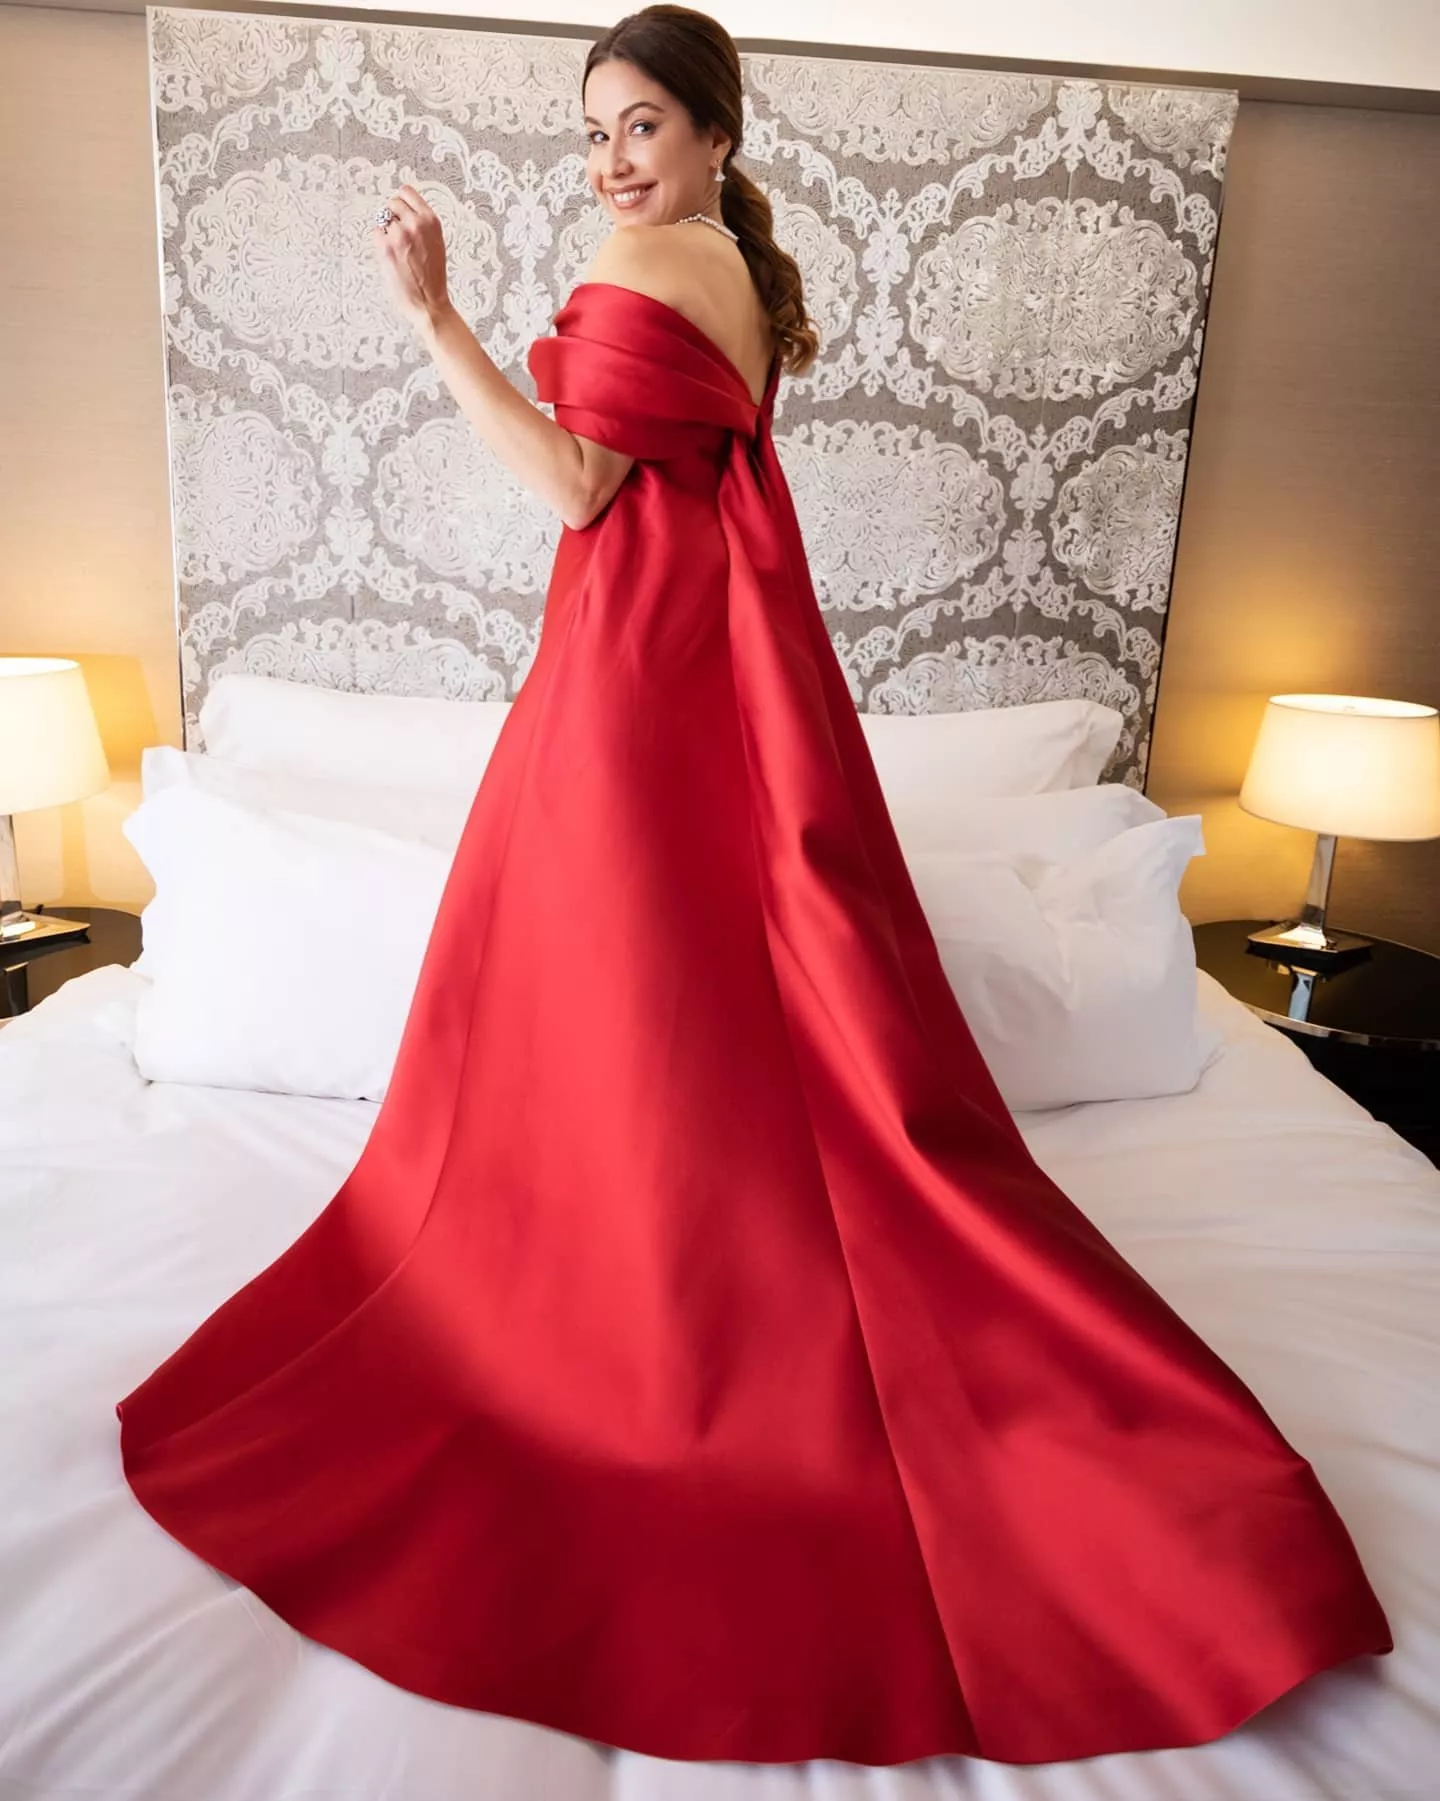 تذكّري معنا أجمل الفساتين الحمراء التي ارتدتها النجمات في السنوات الأخيرة